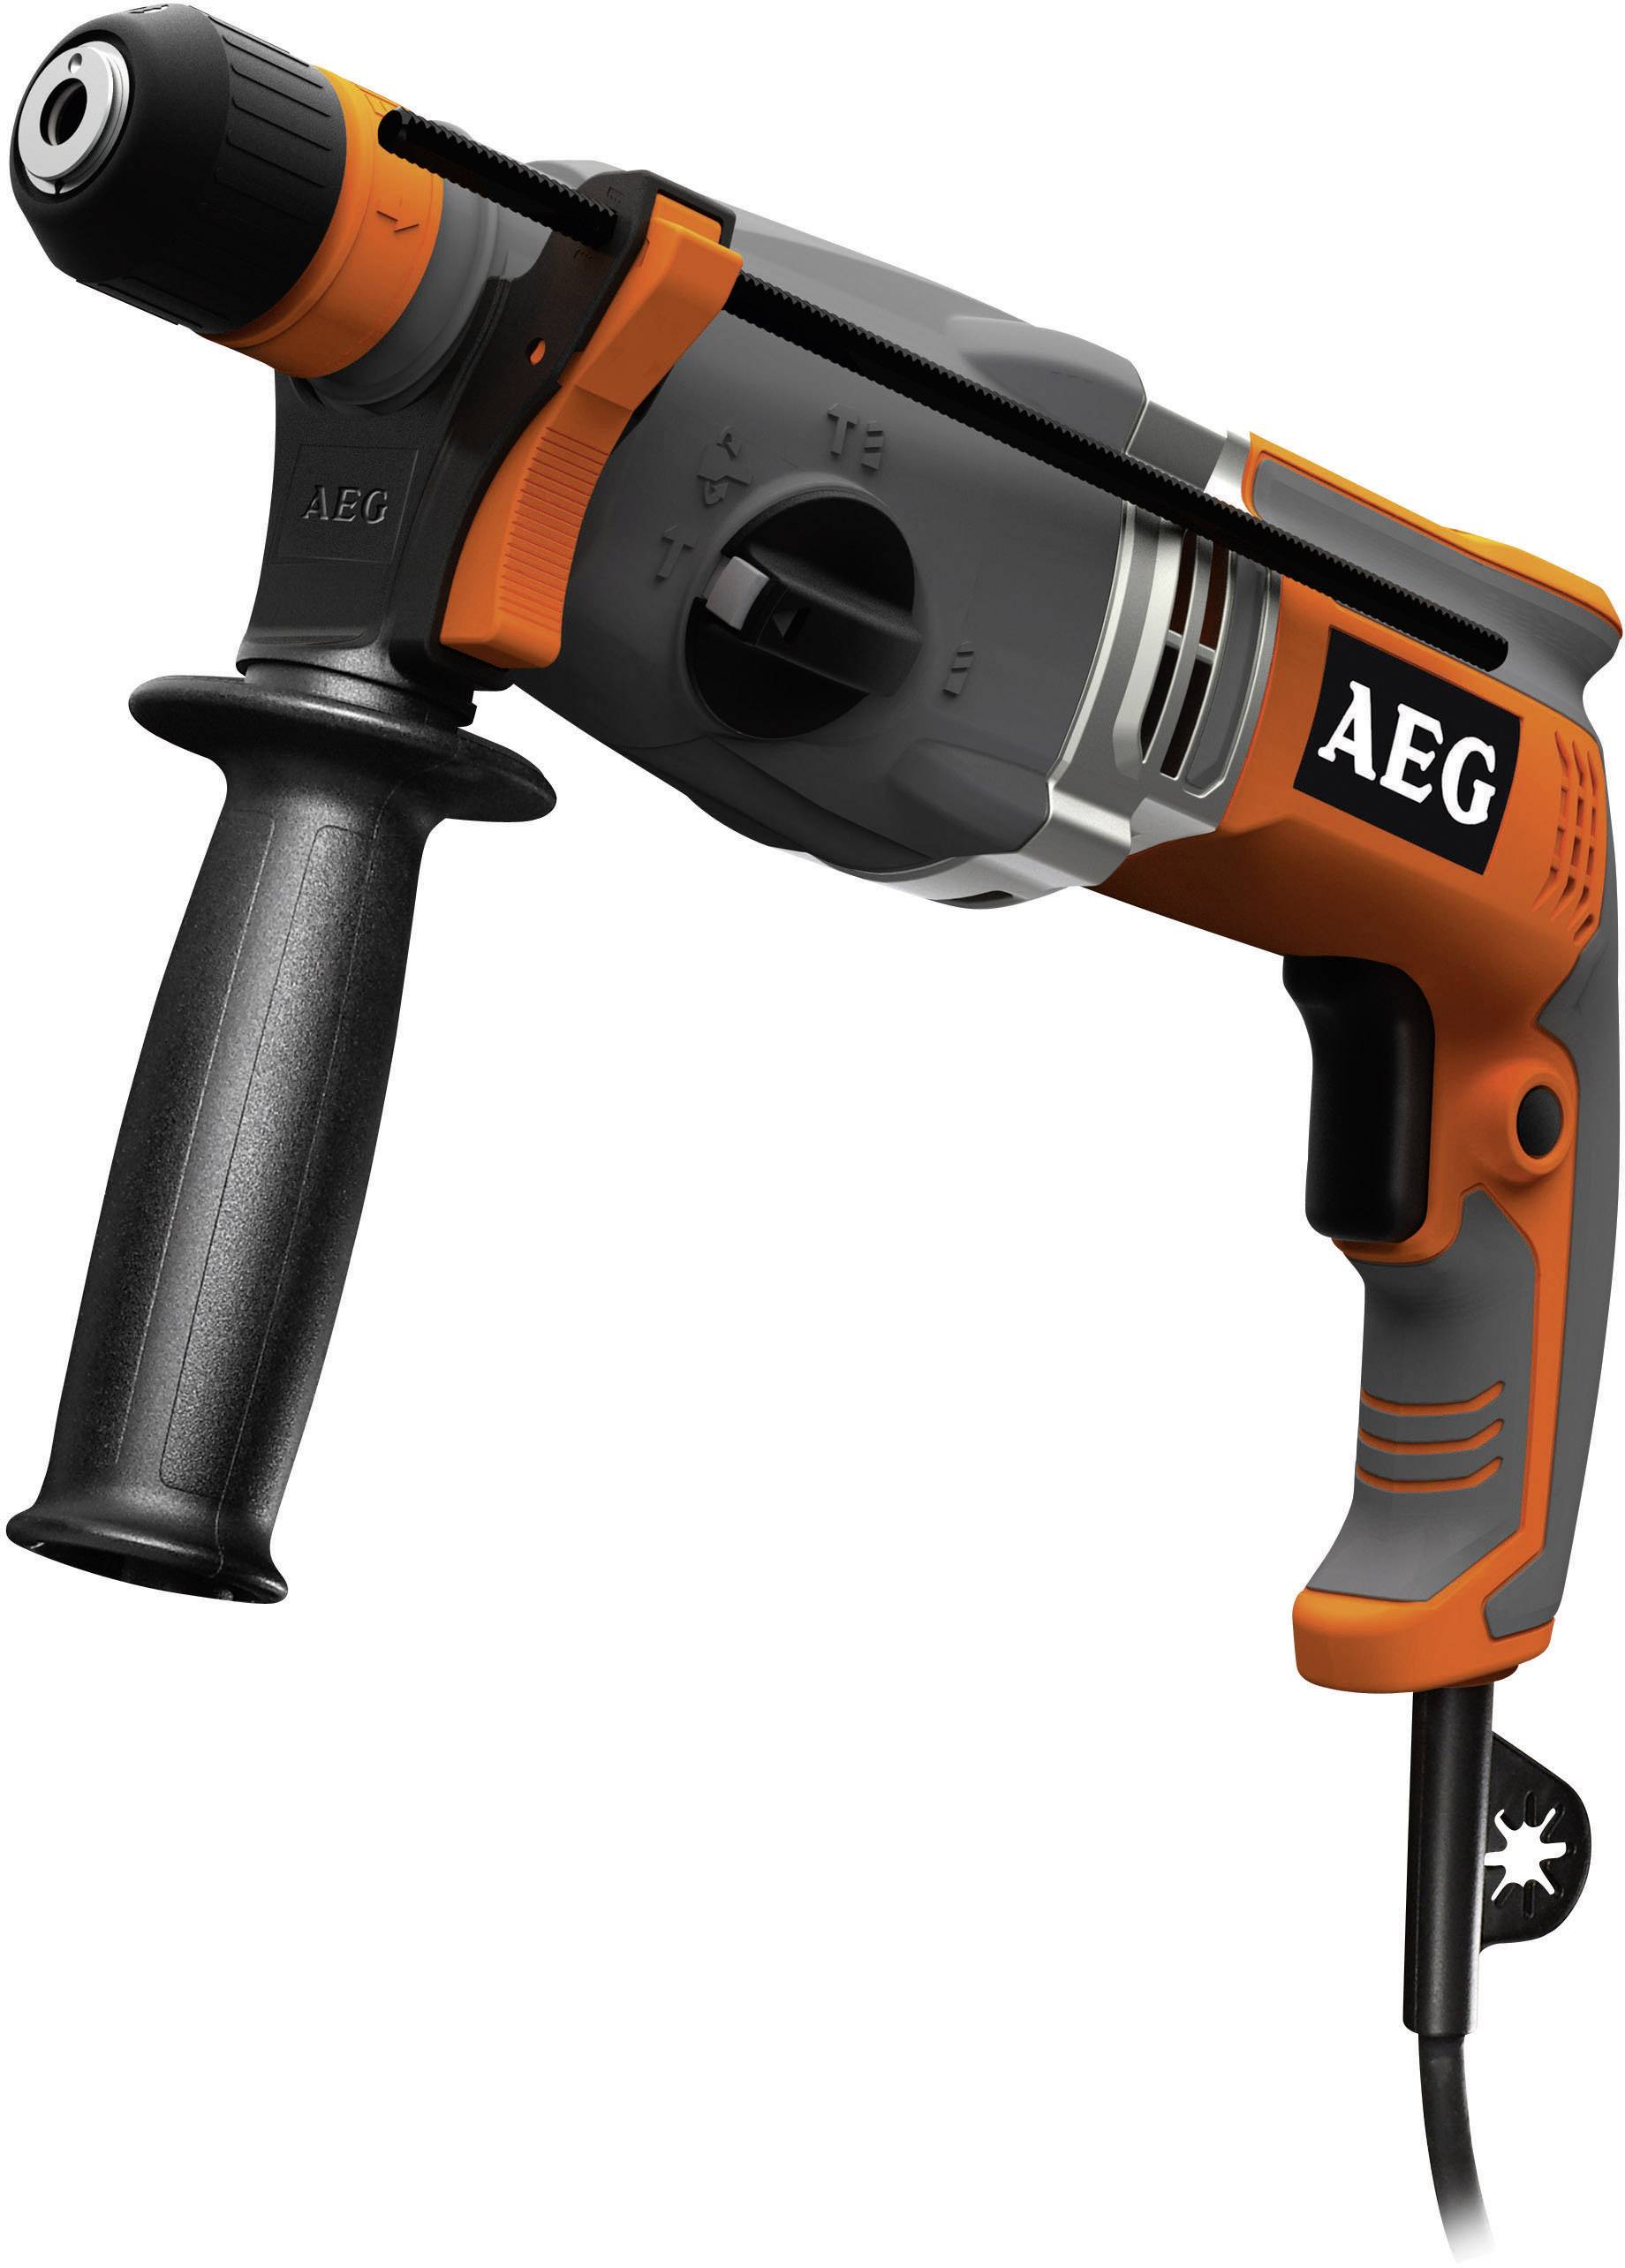 aeg power tools